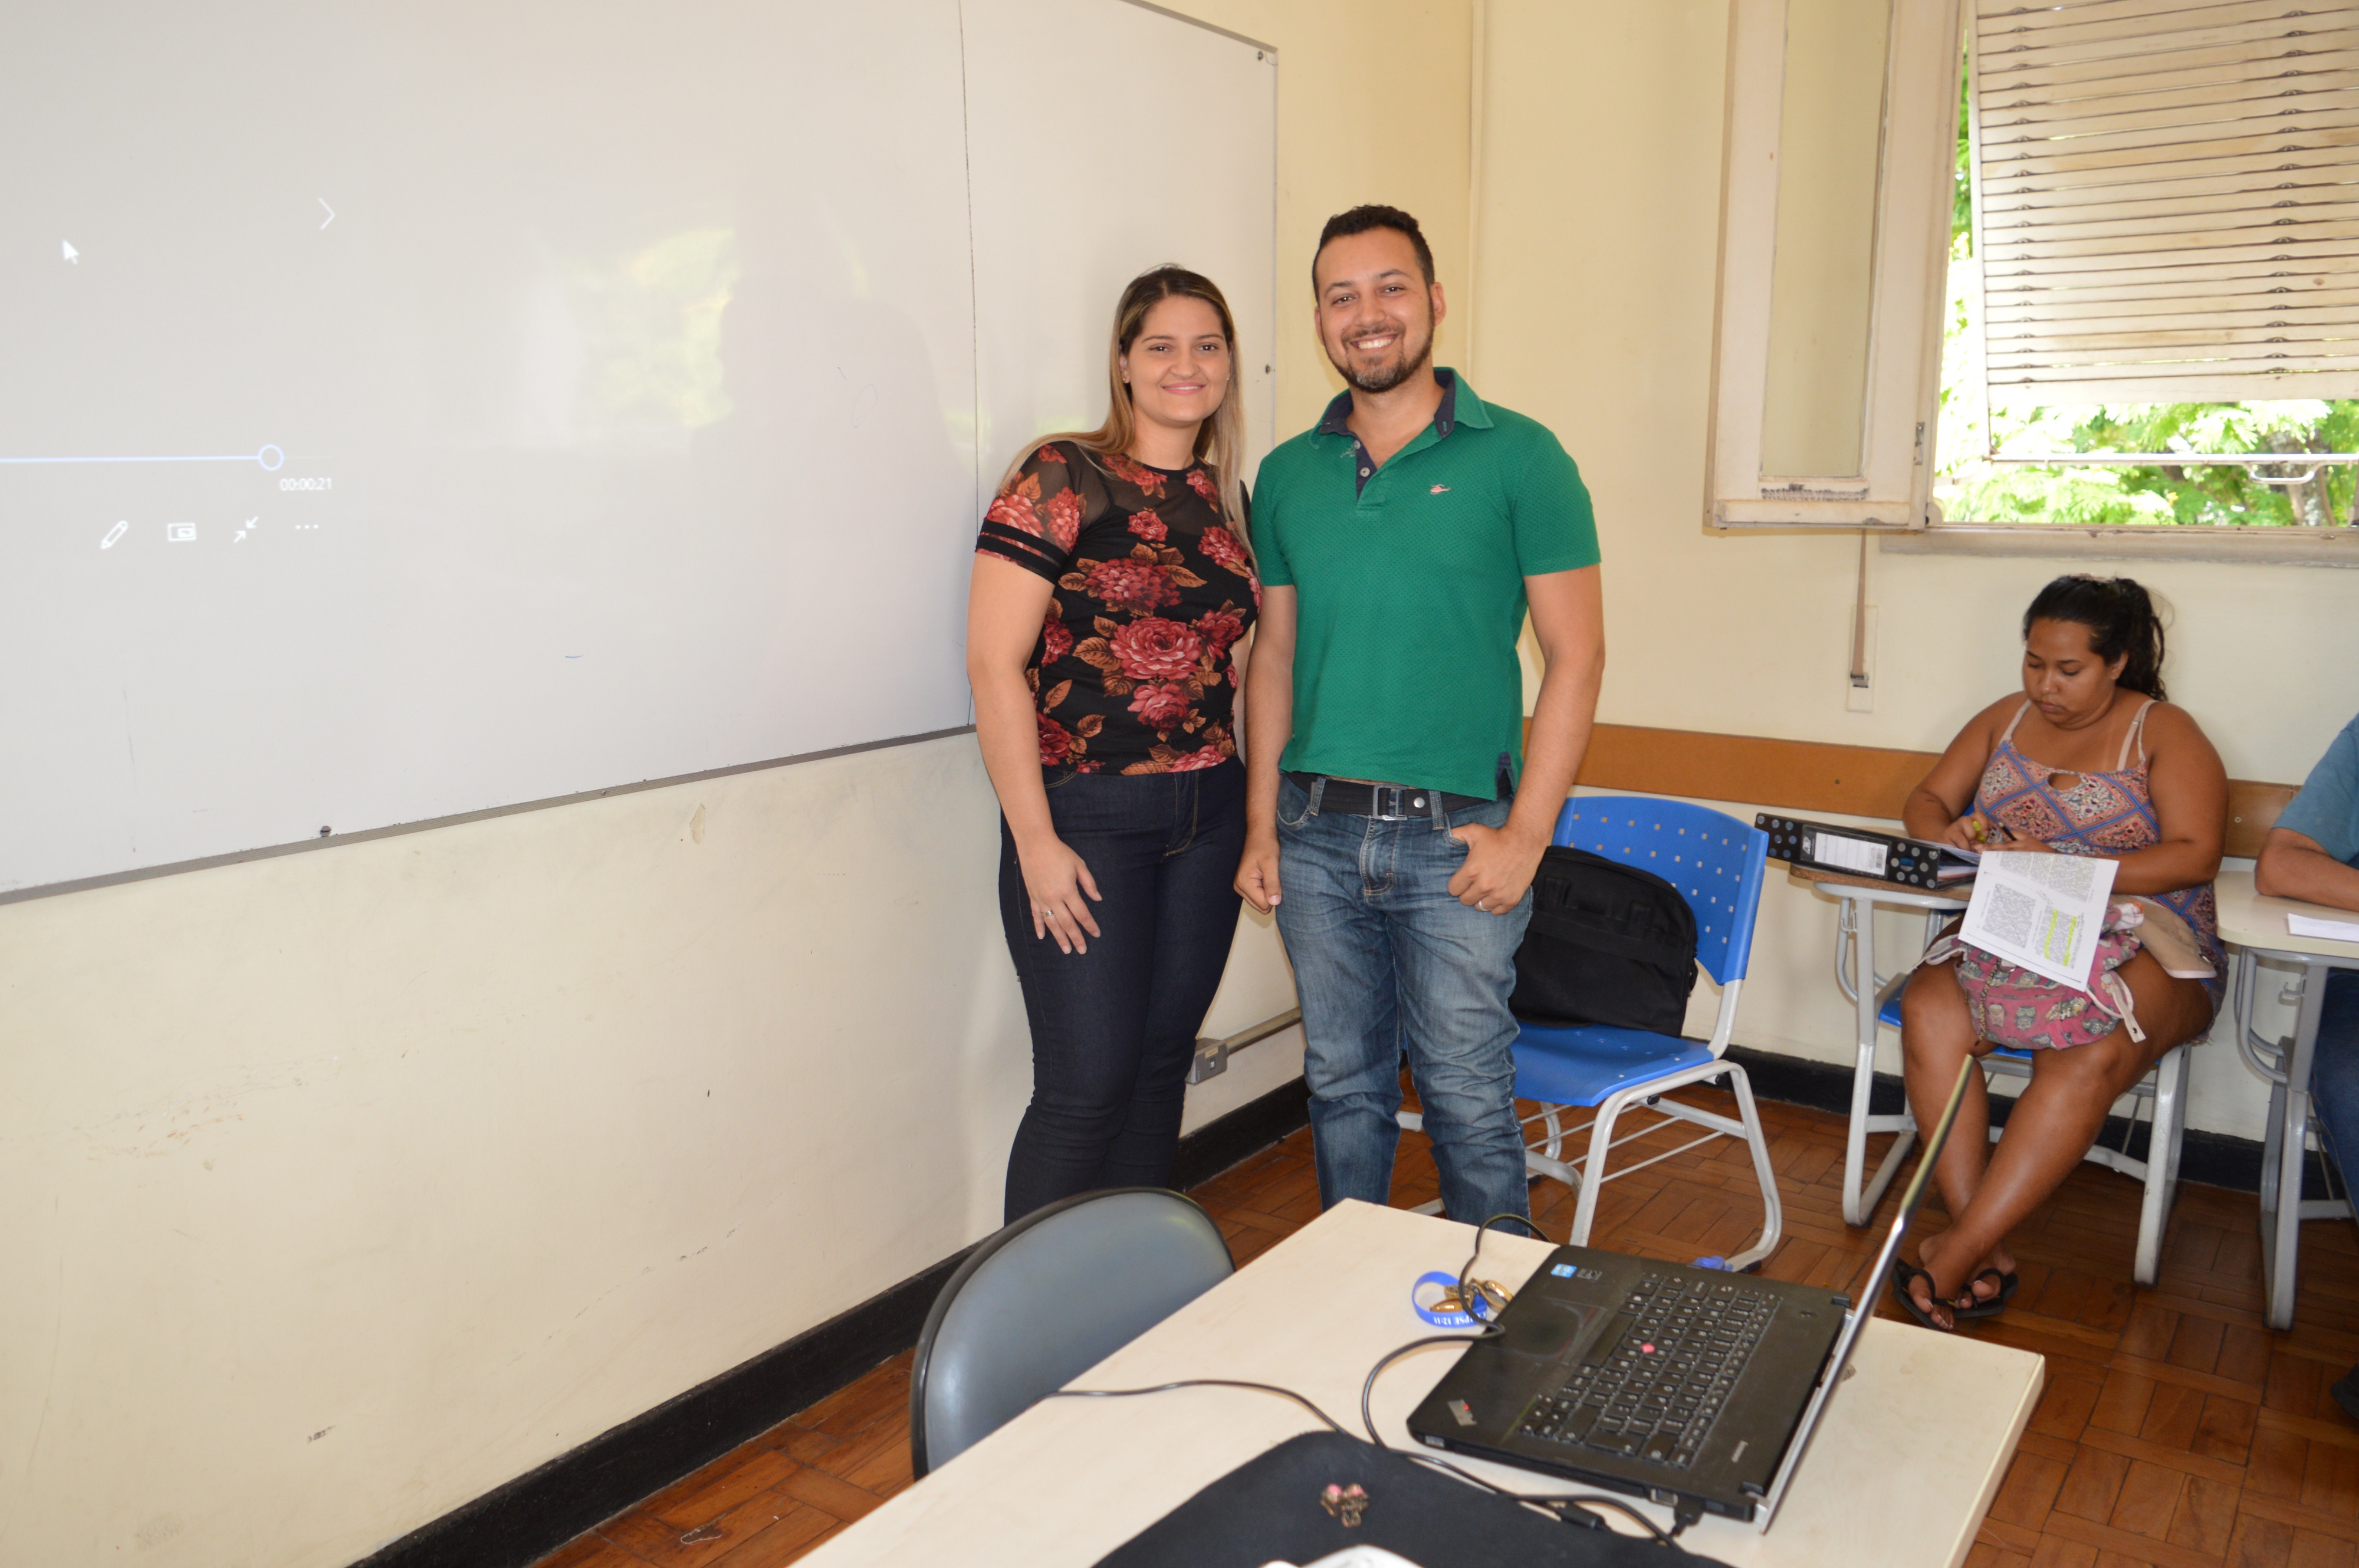 Professora Waléria de Oliveira e o intérprete de Libras, Leone Xavier, o qual nos ajudou a comunicar com a docente para essa reportagem.